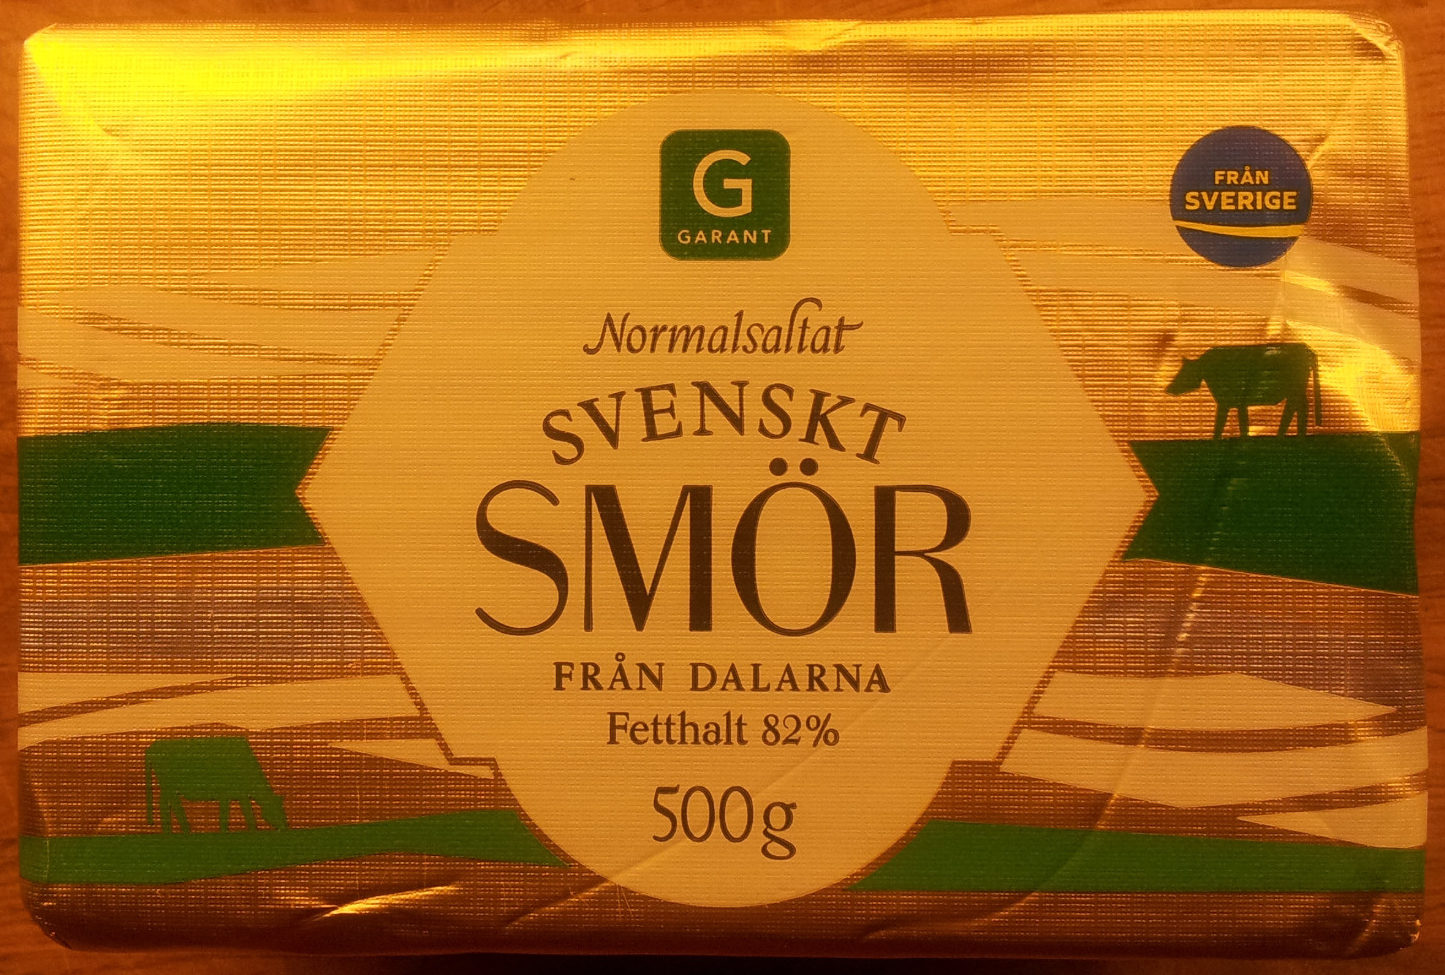 Garant Normalsaltat svenskt smör från Dalarna - Produkt